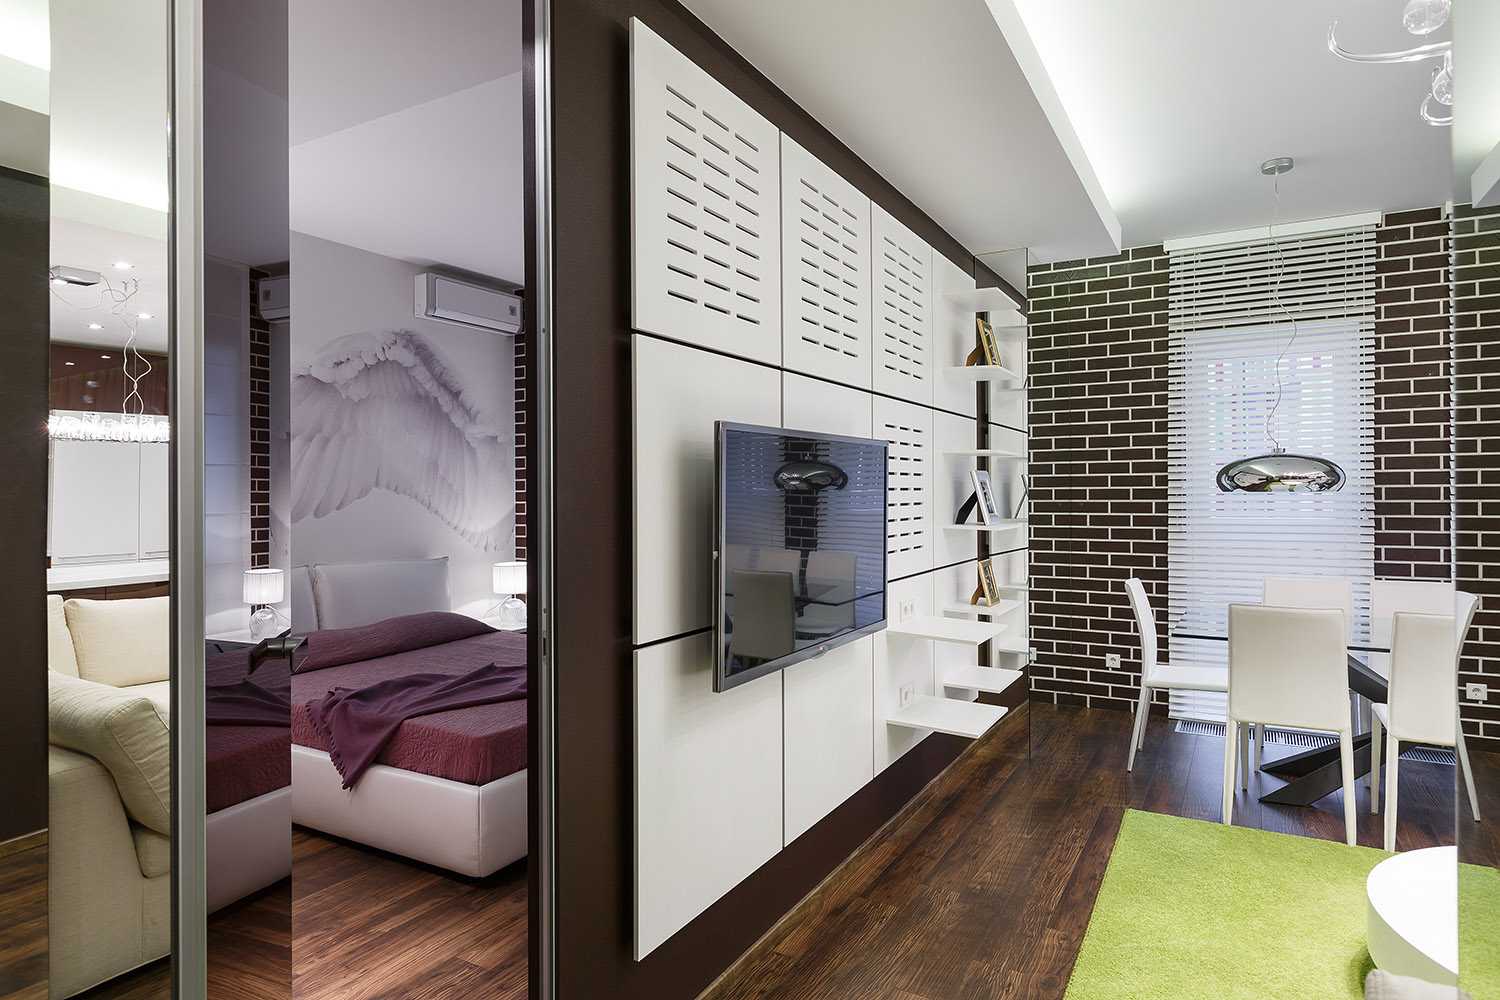 Дизайн квартиры 54 кв м 2 комнаты: варианты, фото. дизайн интерьера двухкомнатной квартиры